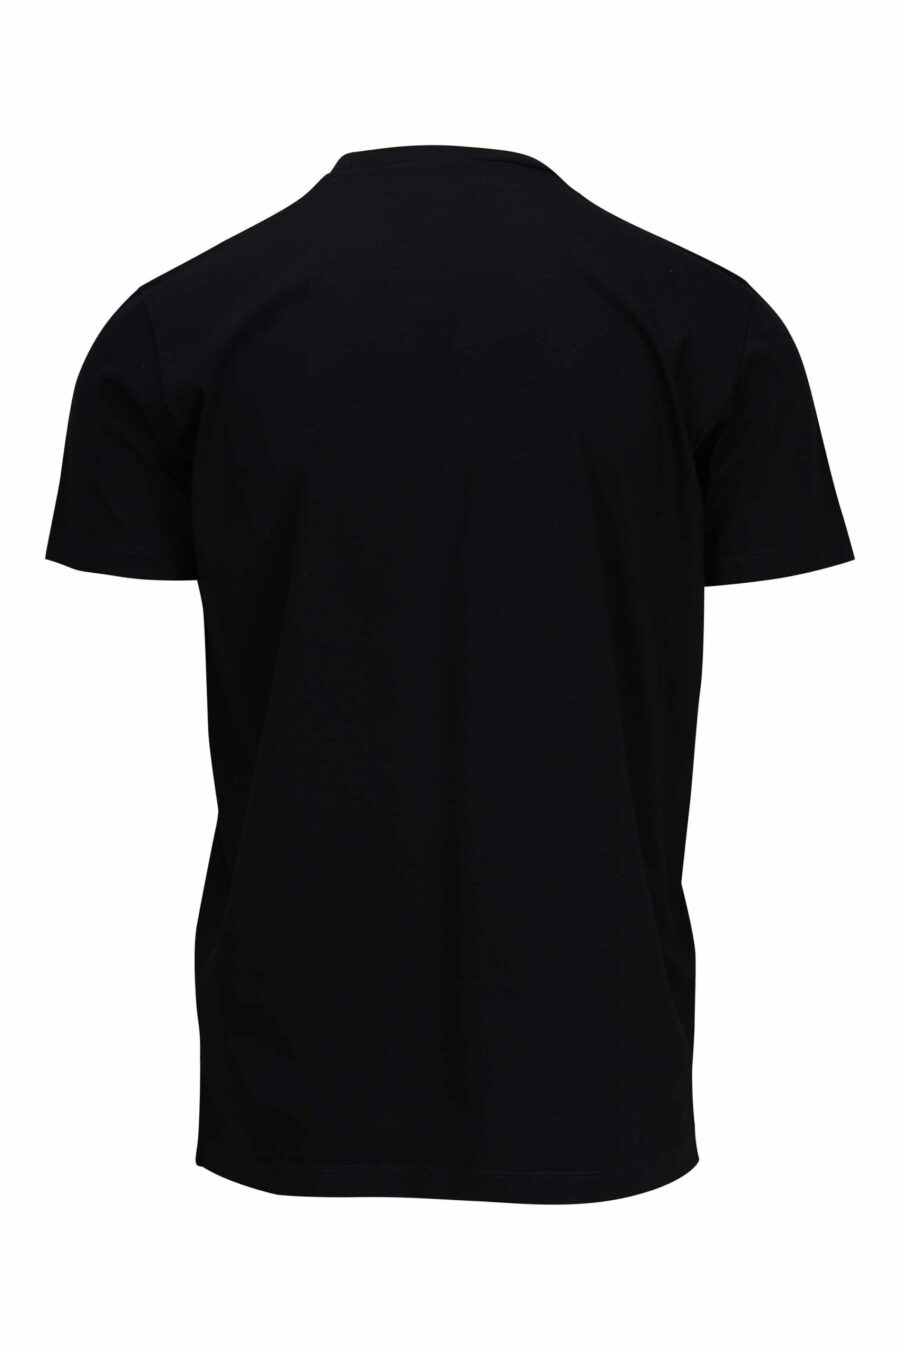 Camiseta negra con maxilogo monocromático redondo - 8054148086091 1 scaled